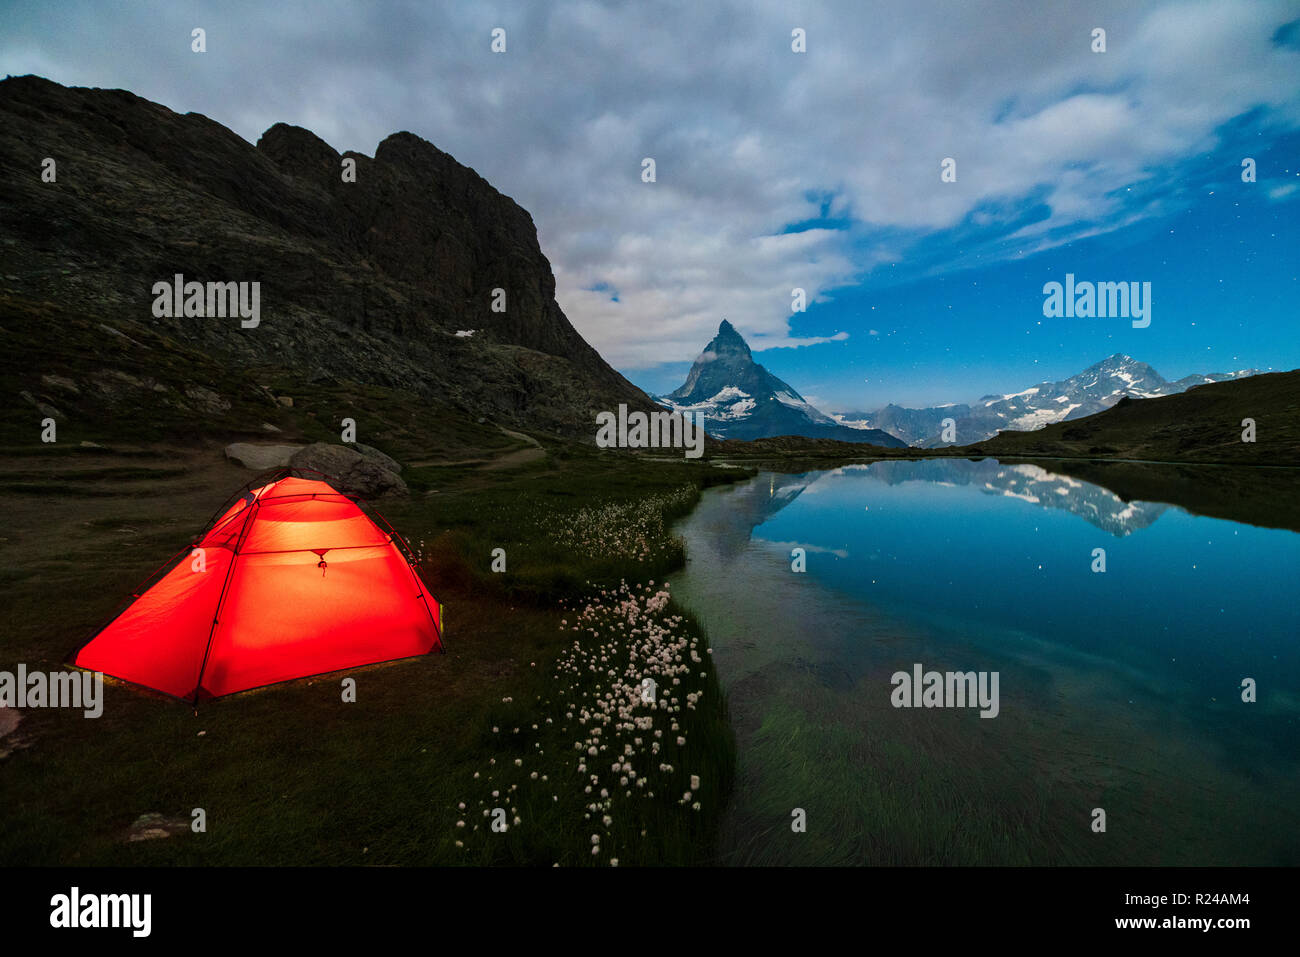 Tenda sulla riva del lago Riffelsee affacciata sul Cervino e Zermatt, canton Vallese, alpi svizzere, Svizzera, Europa Foto Stock